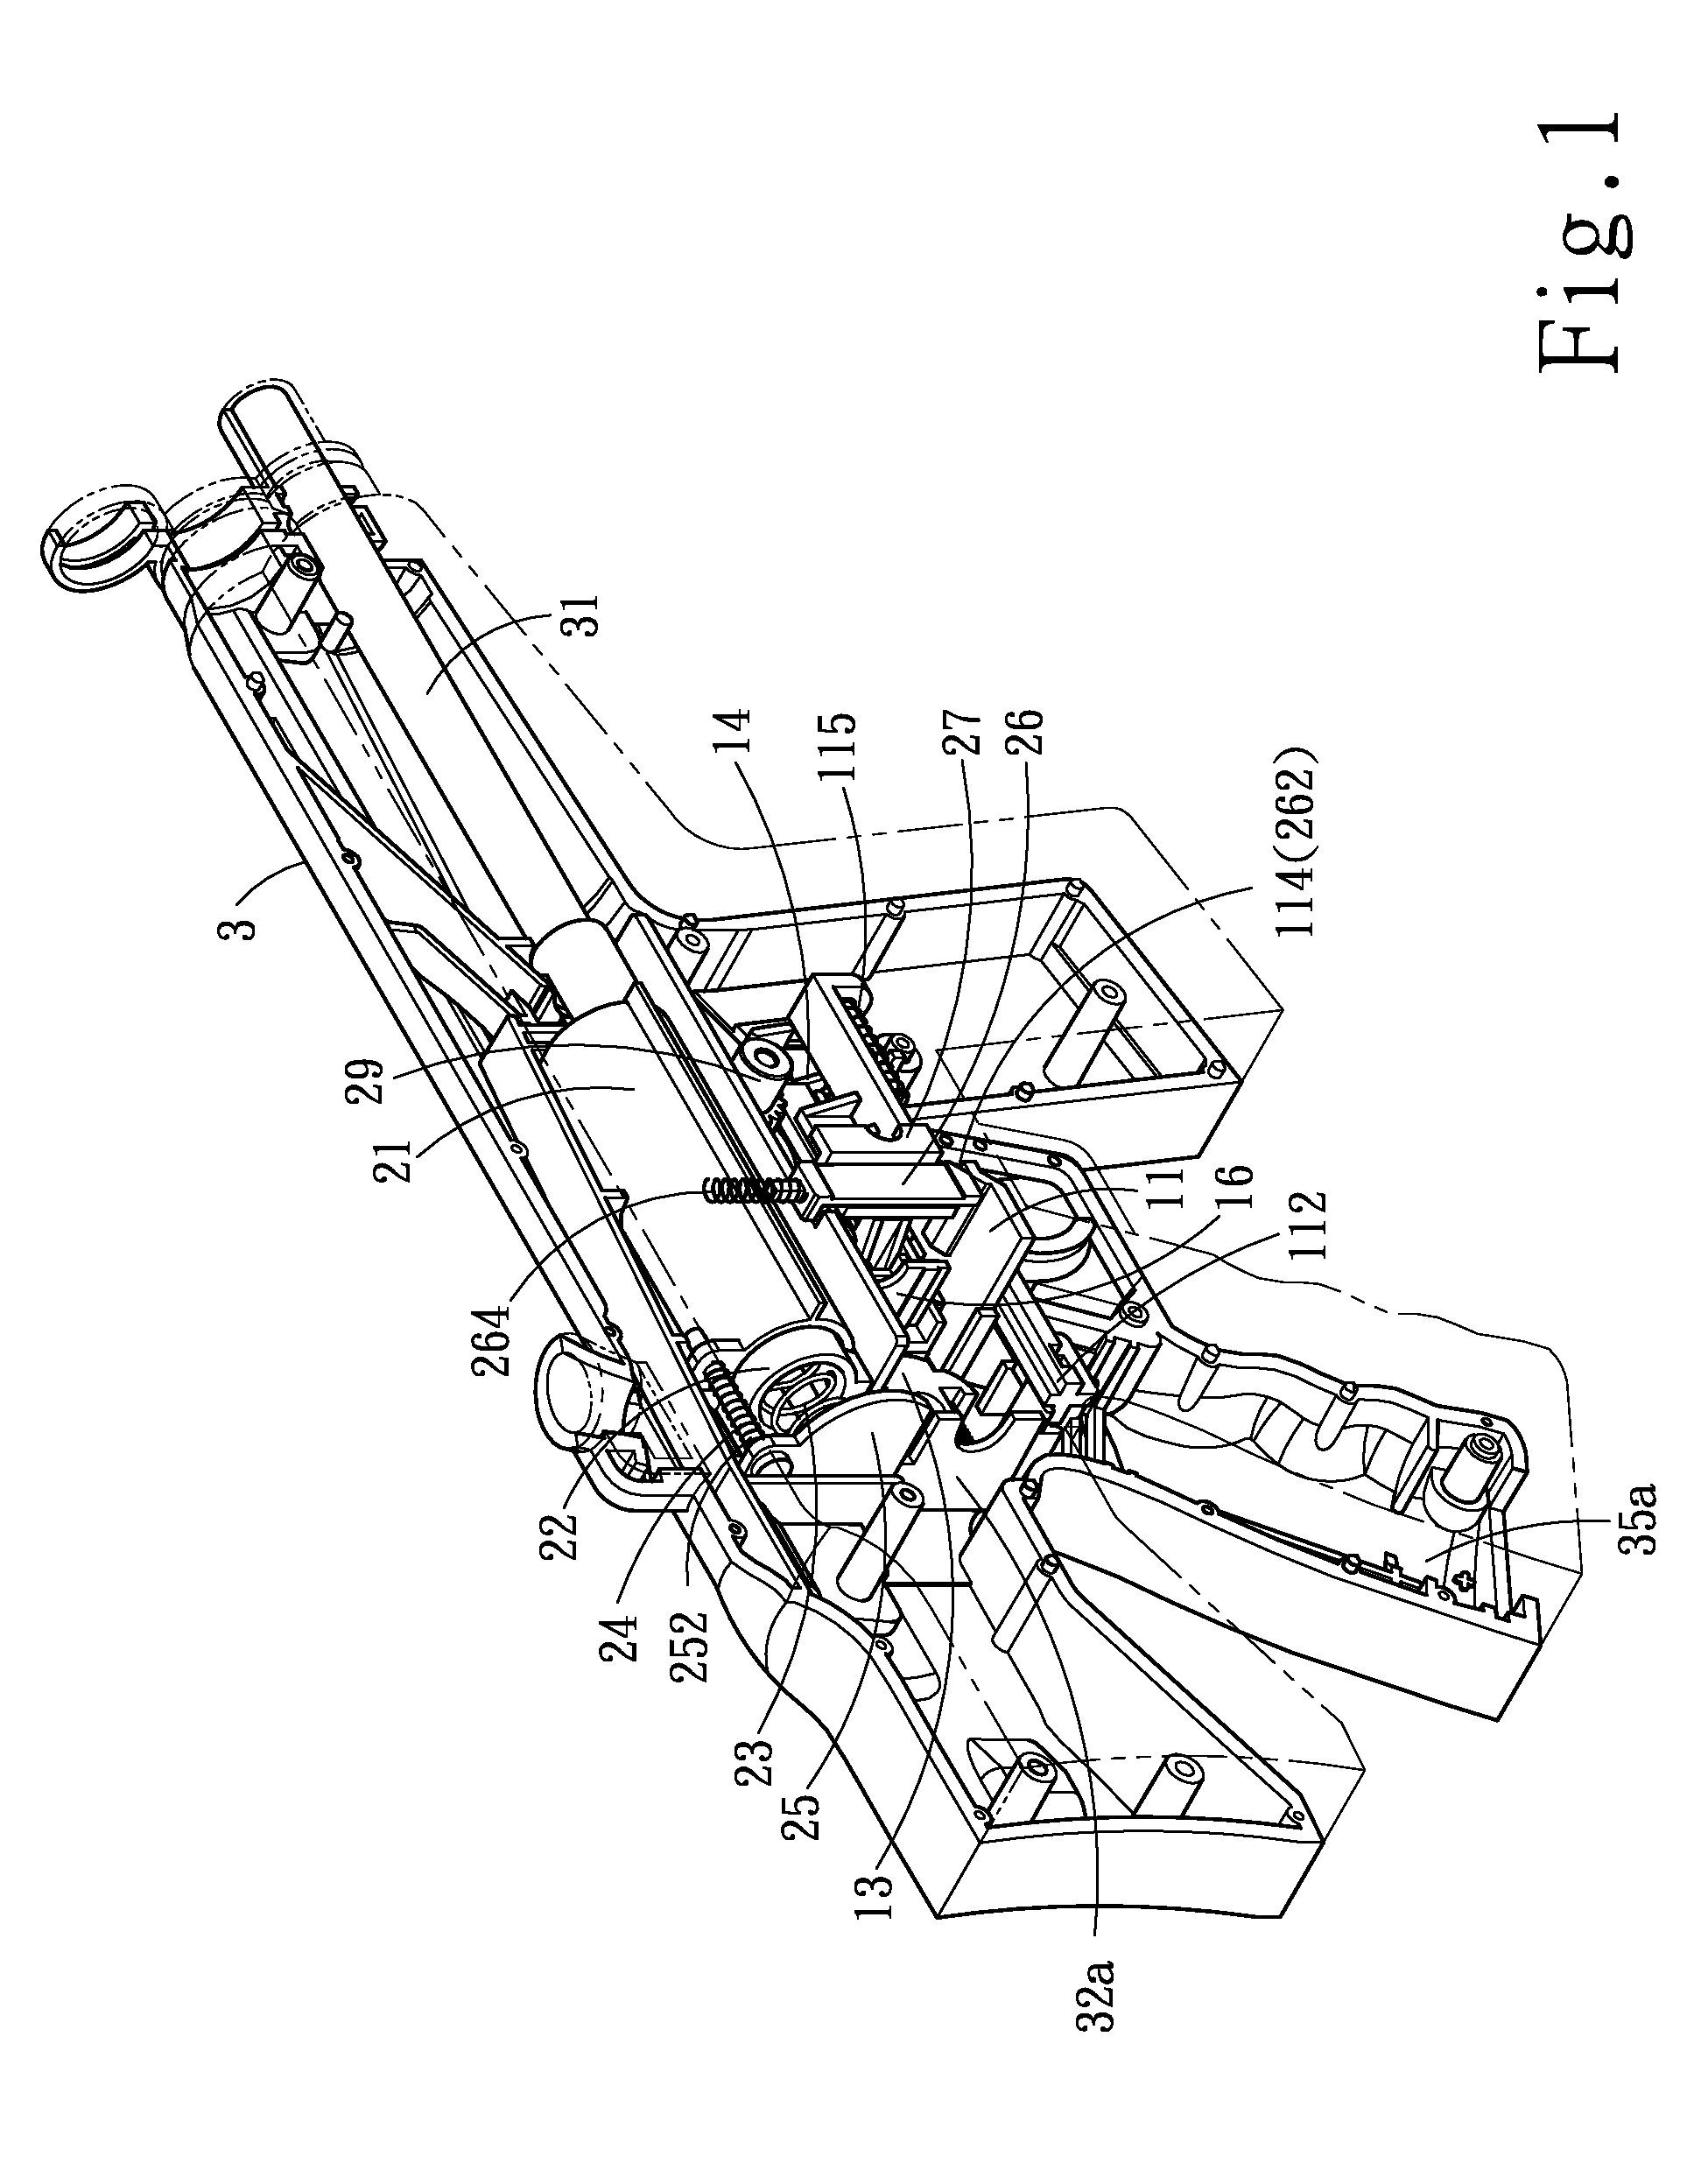 Duplex control structure of toy gun